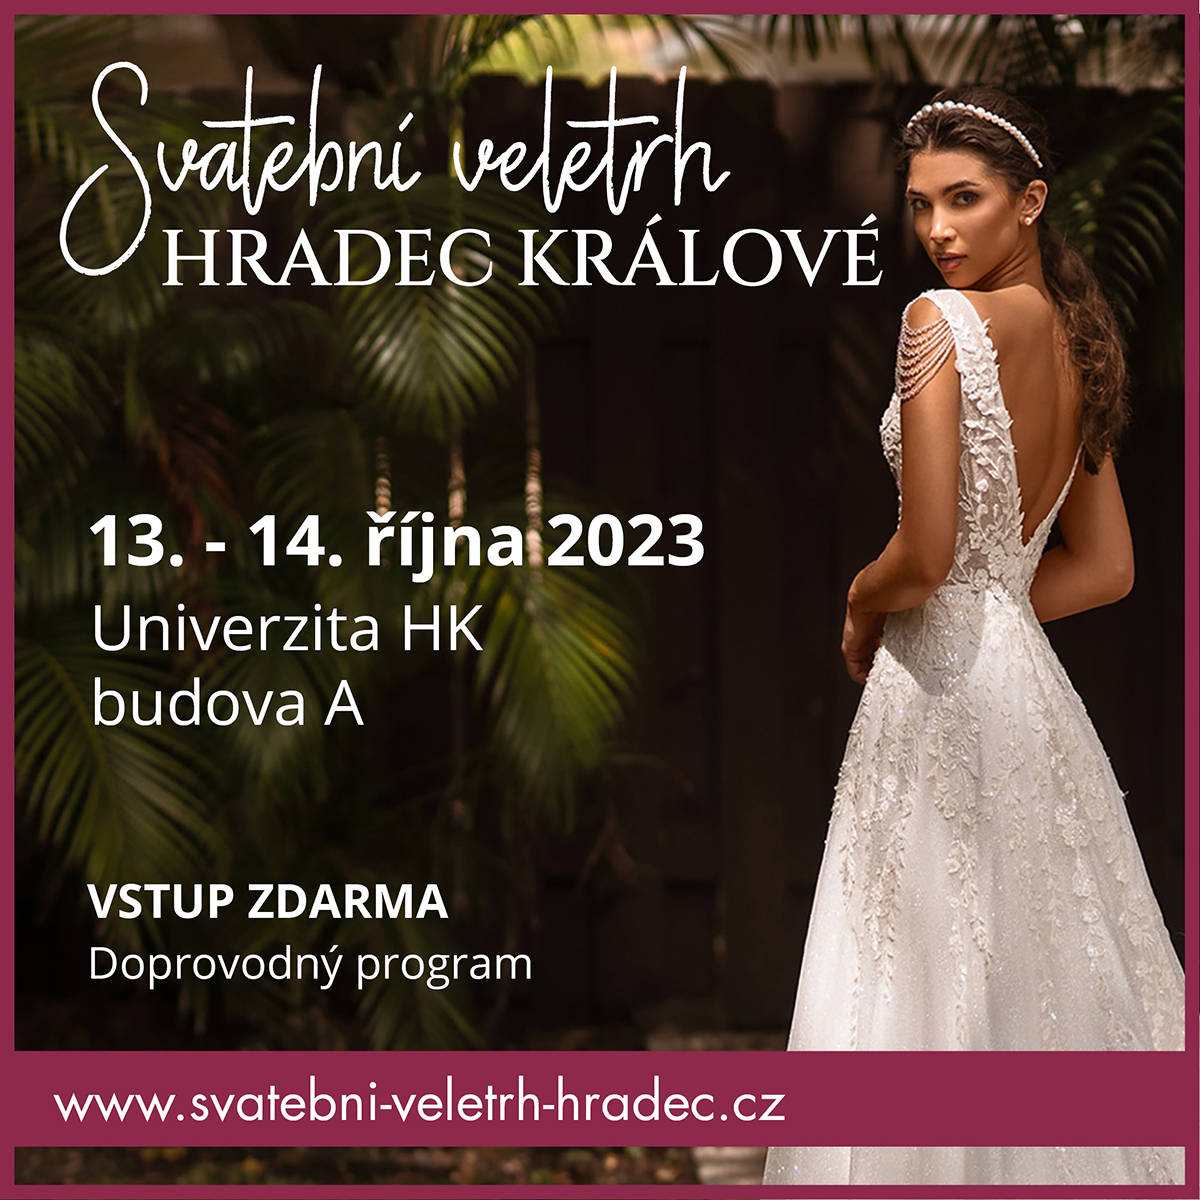 Svatební veletrh Hradec Králové 2023 – pozvánka